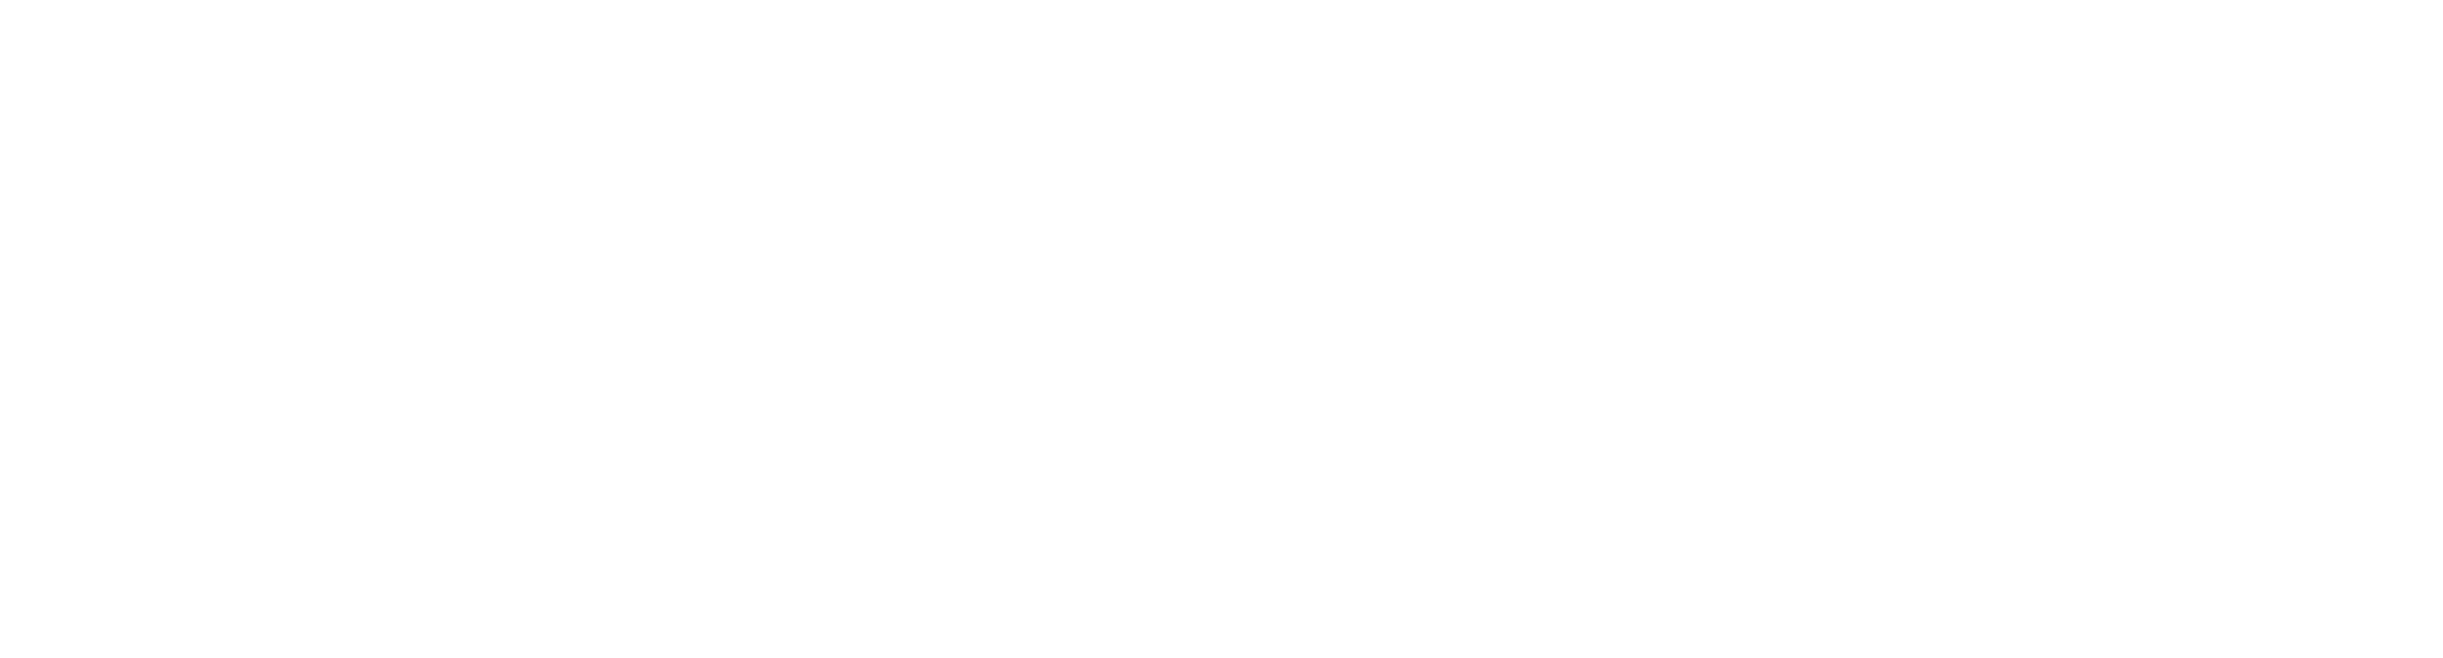 Volunteering Research Hub